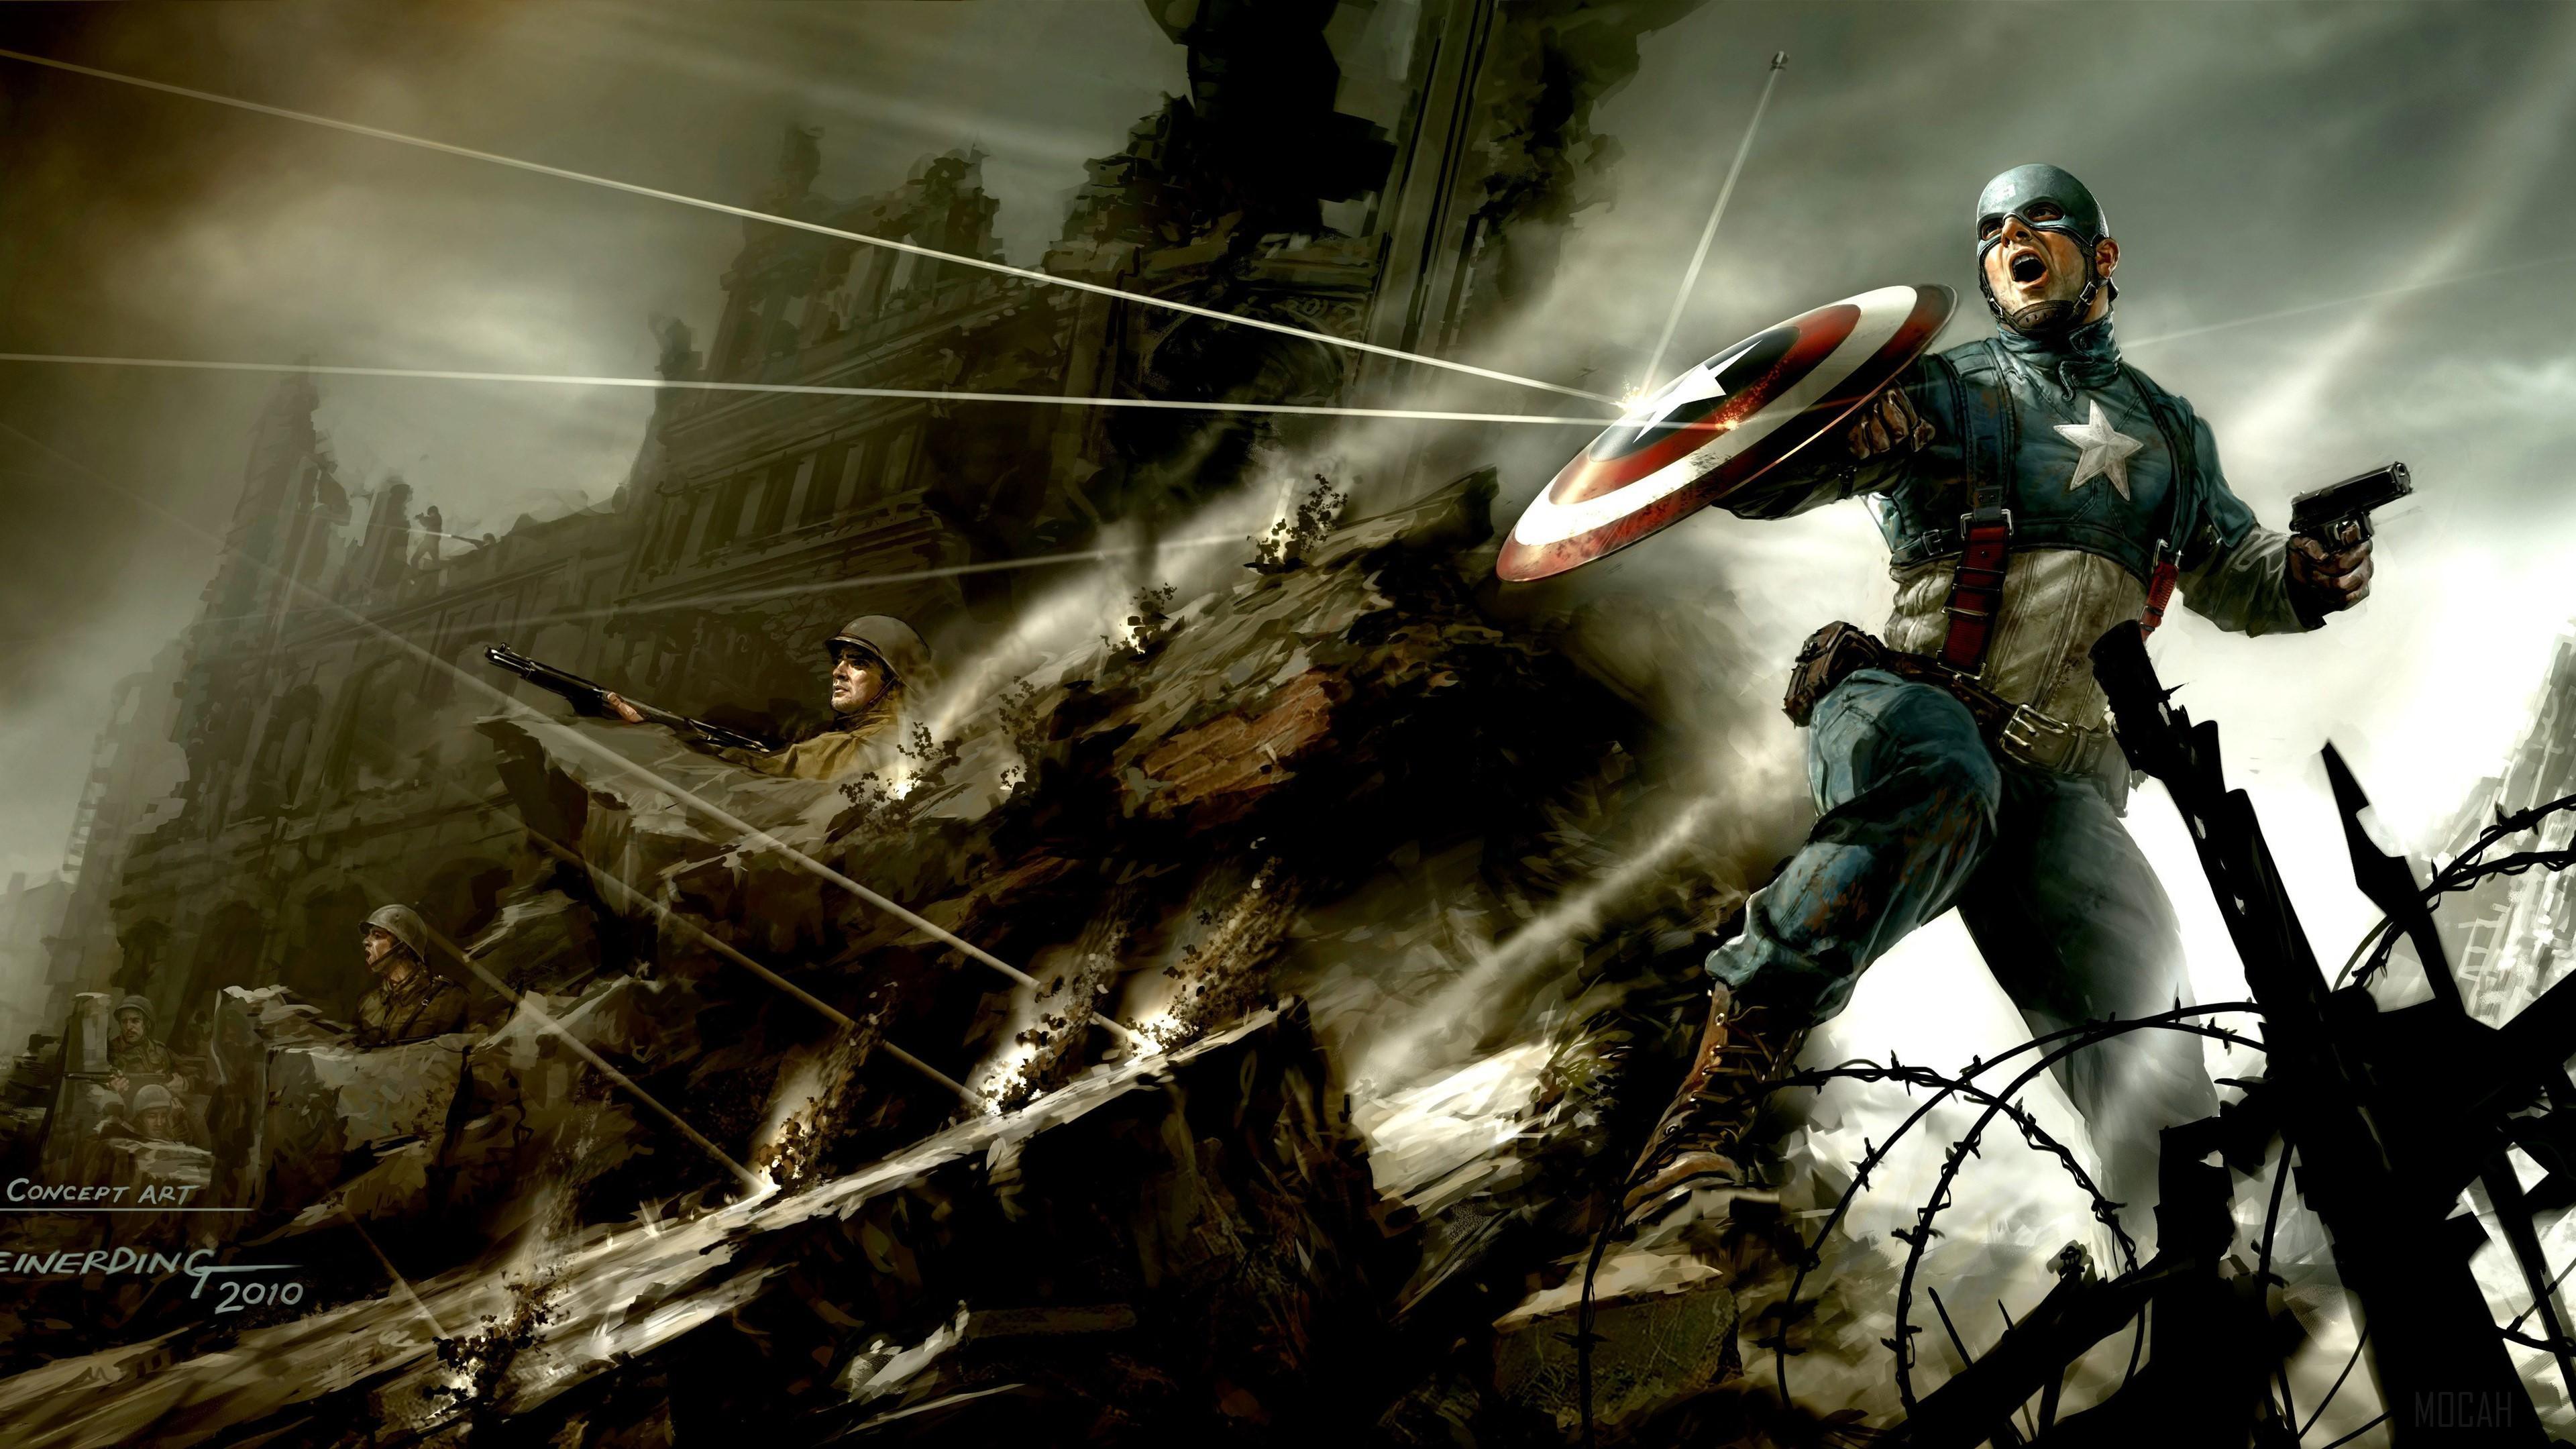 HD wallpaper, Captain America The First Avenger Artwork 4K